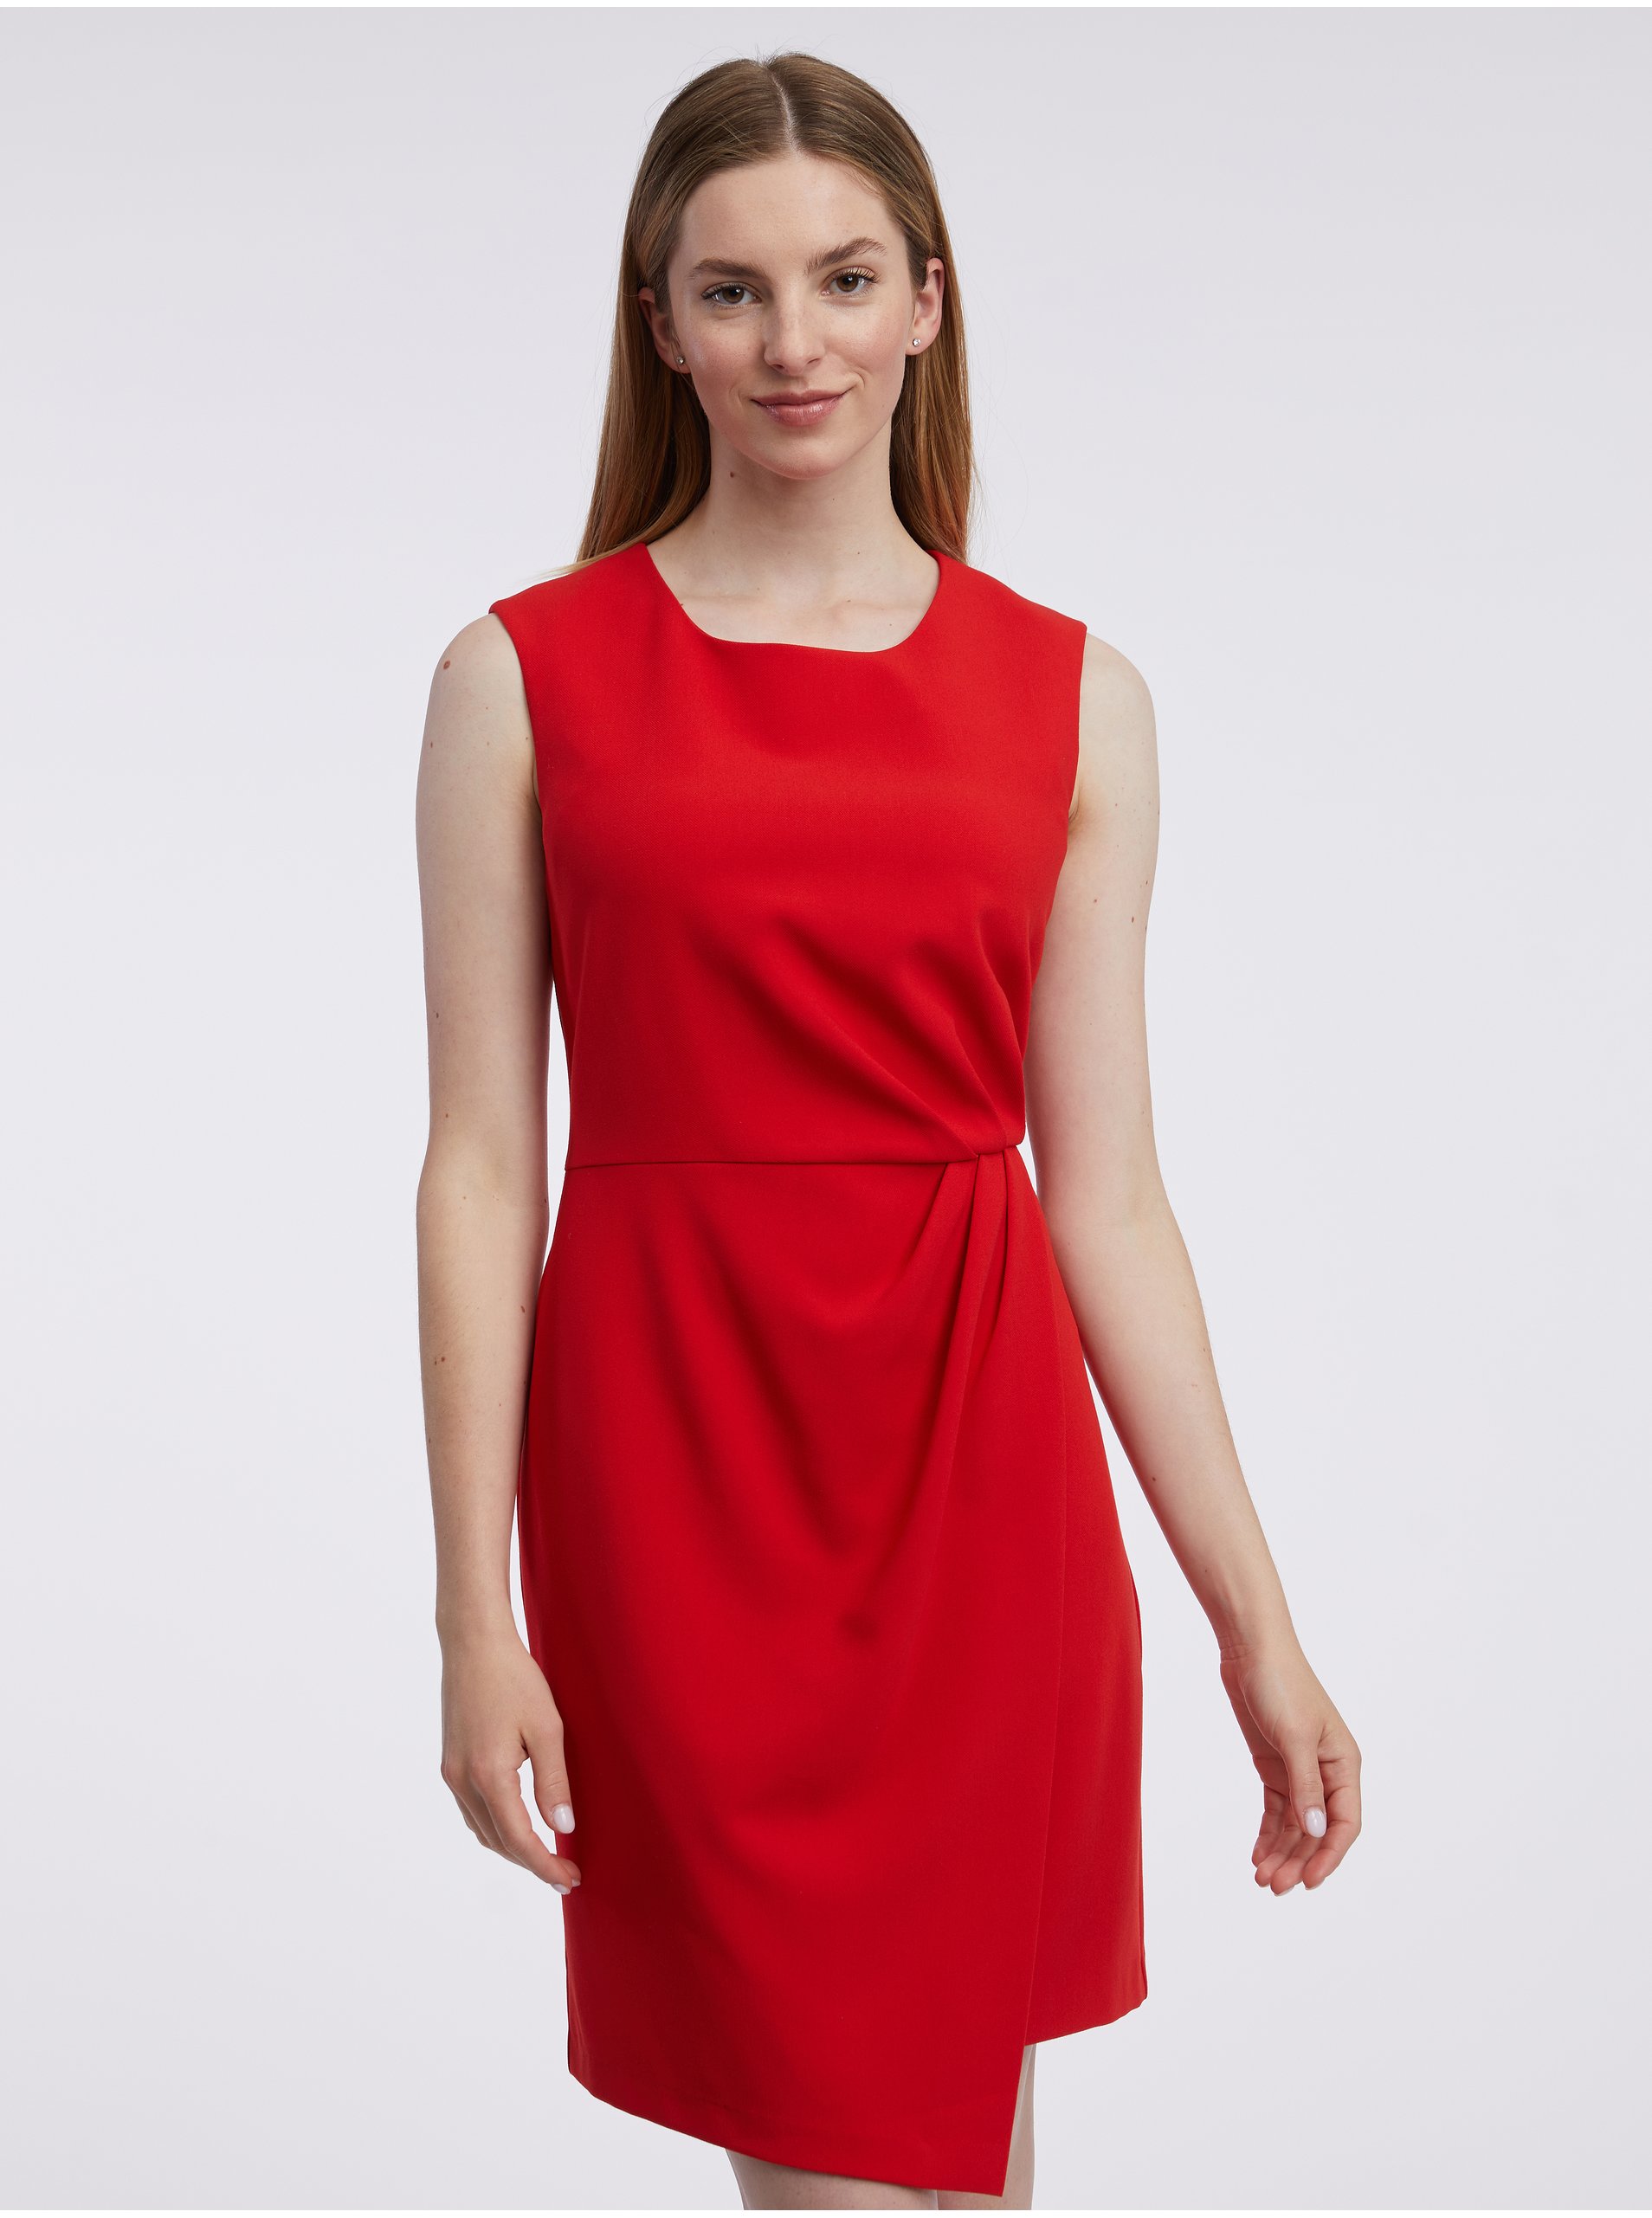 Orsay Red Women's Sheath Dress - Women